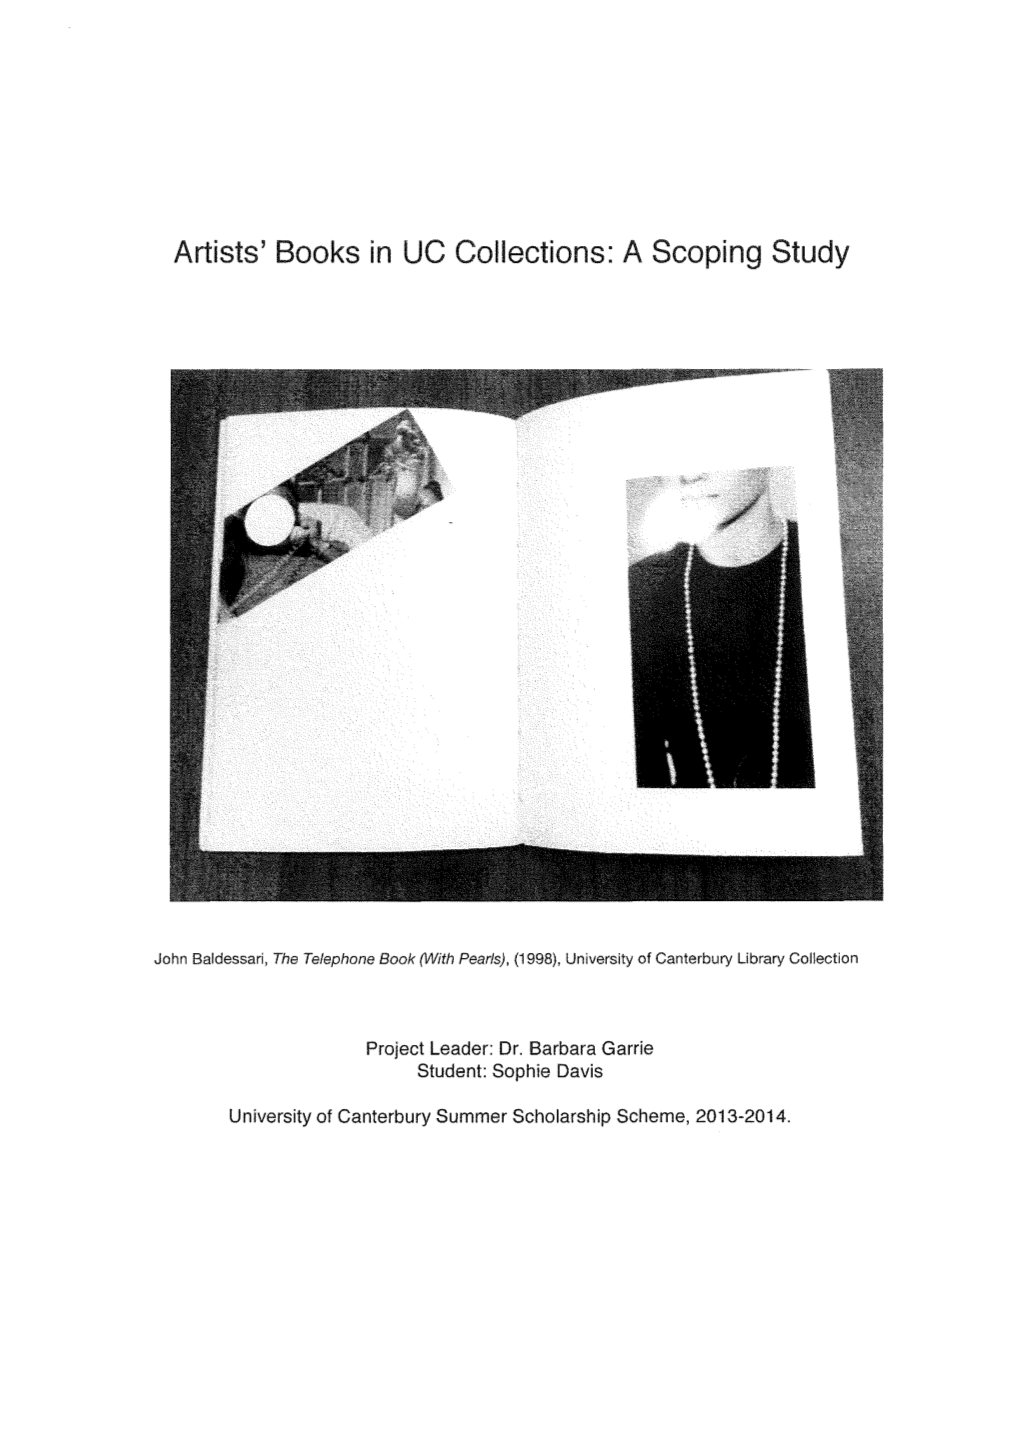 UC-Artist's-Books.Pdf (2.251Mb)